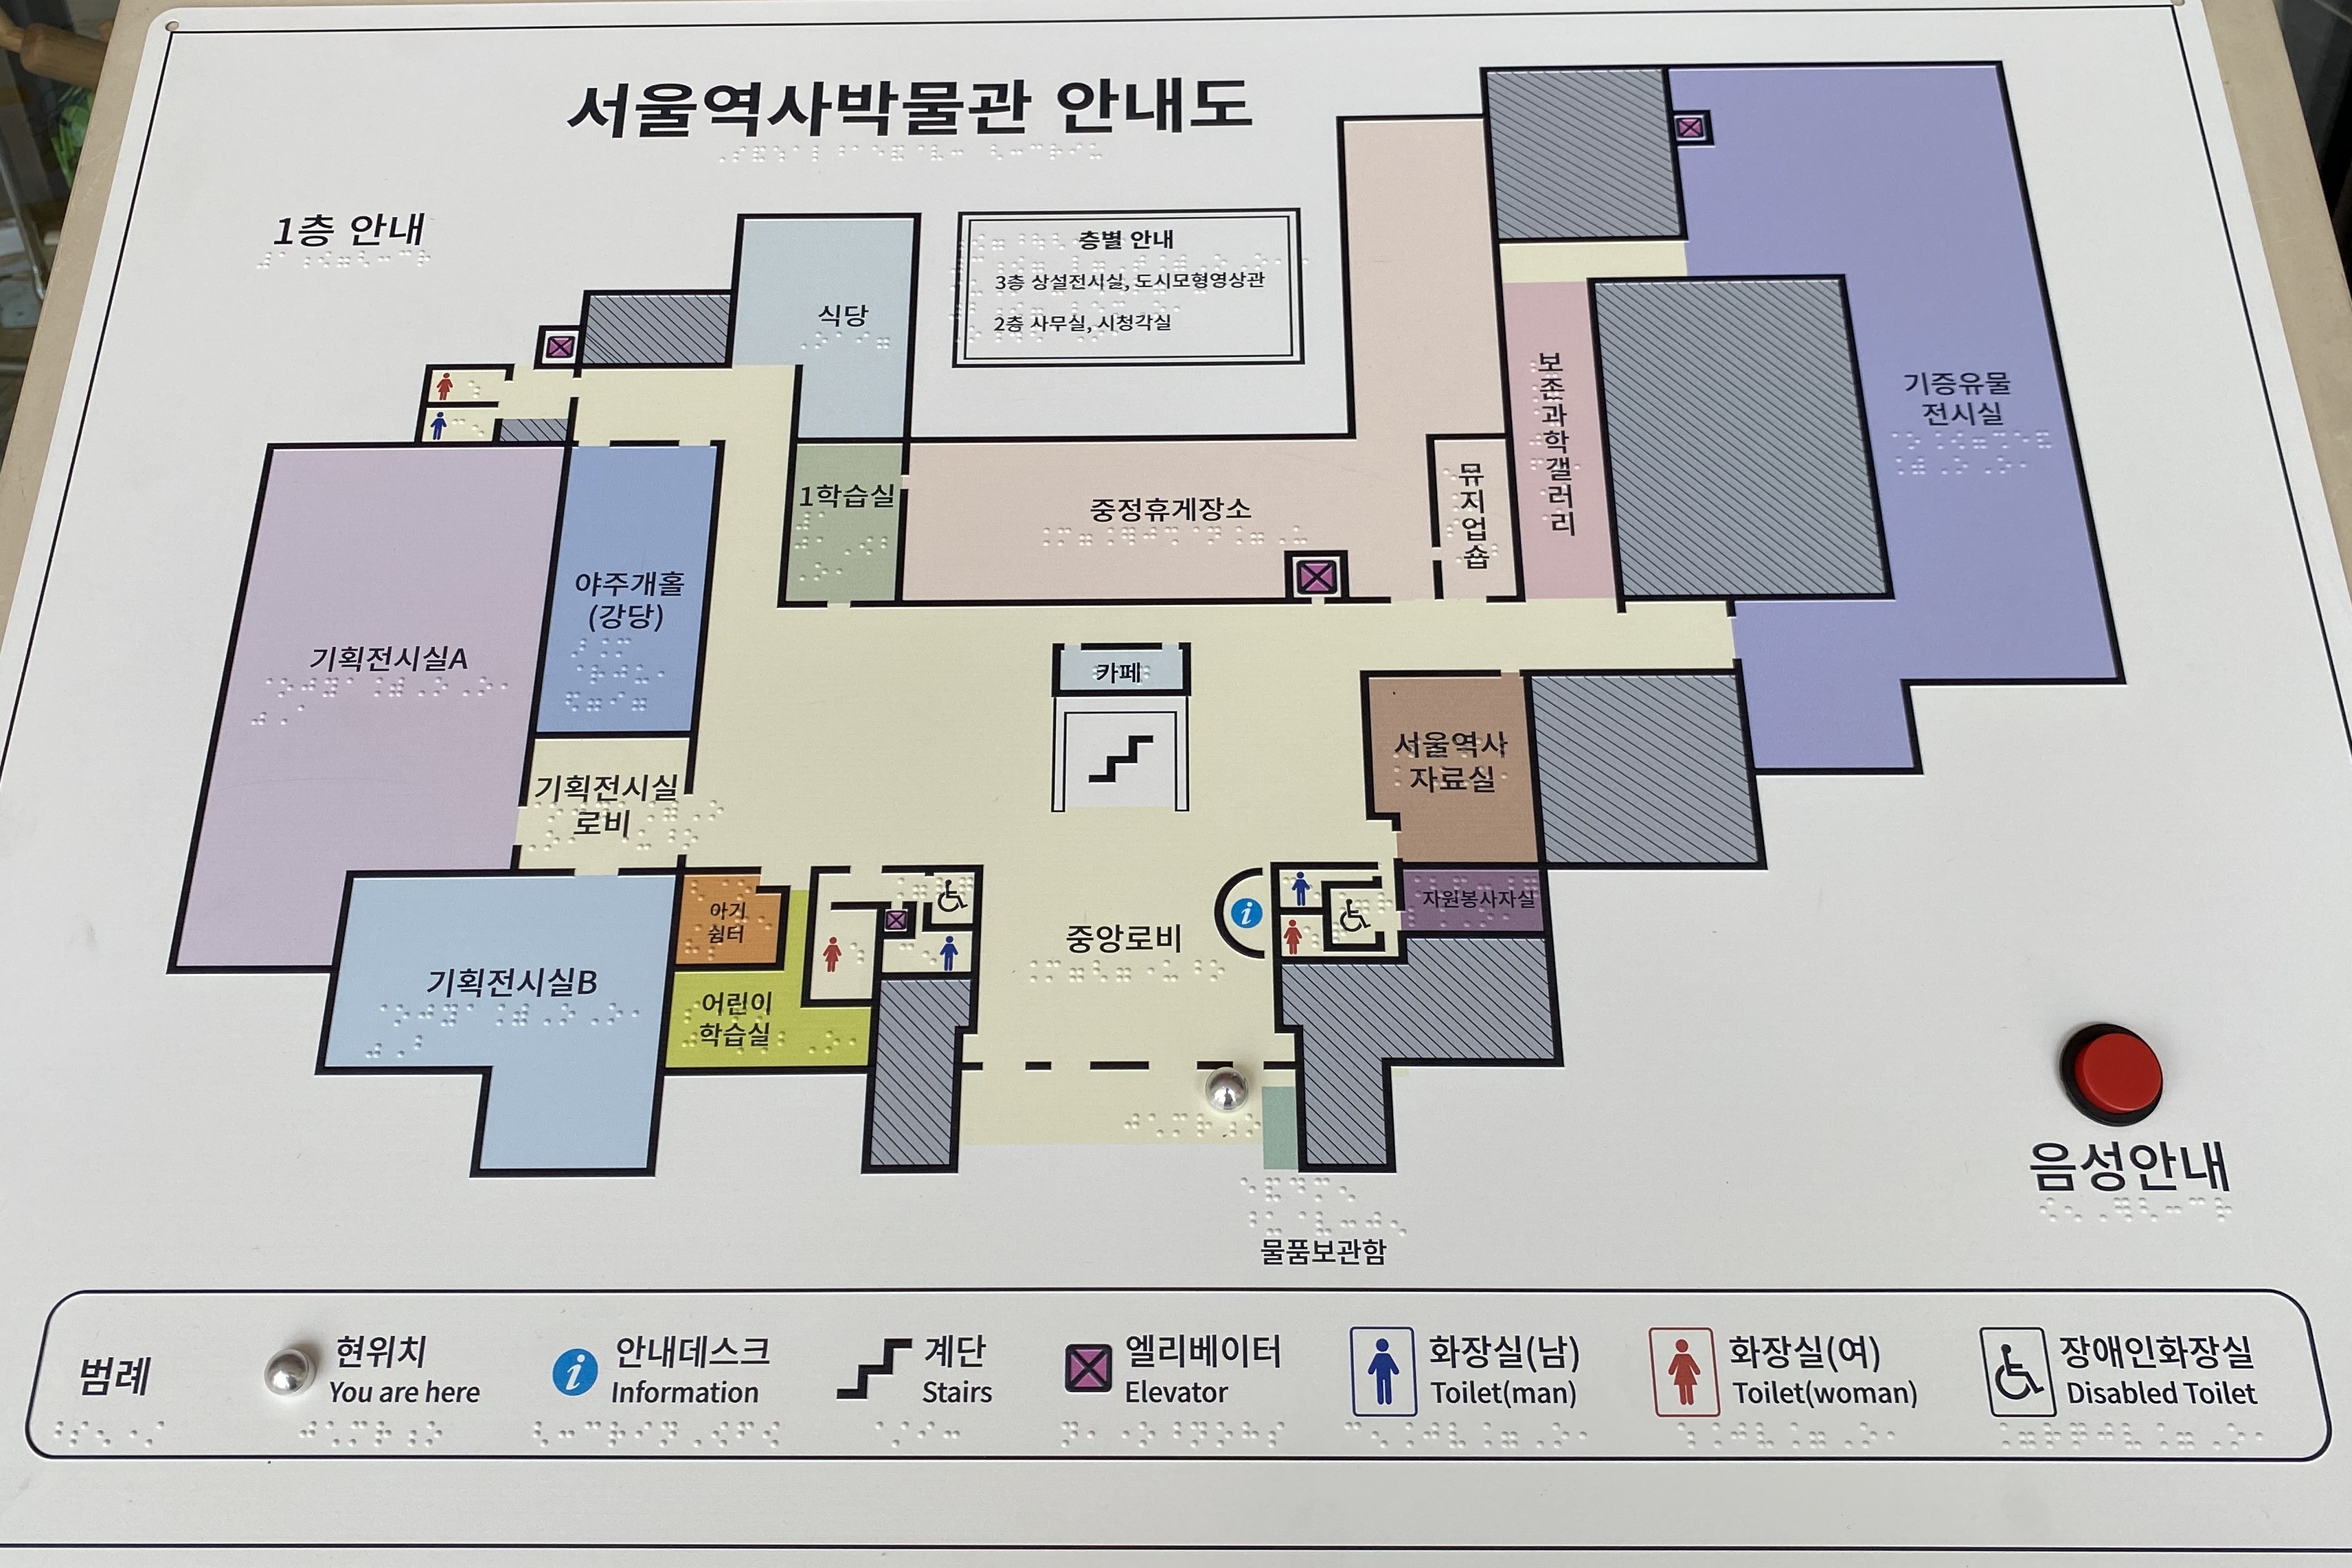 안내판/안내데스크0 : 서울역사박물관 점자안내도